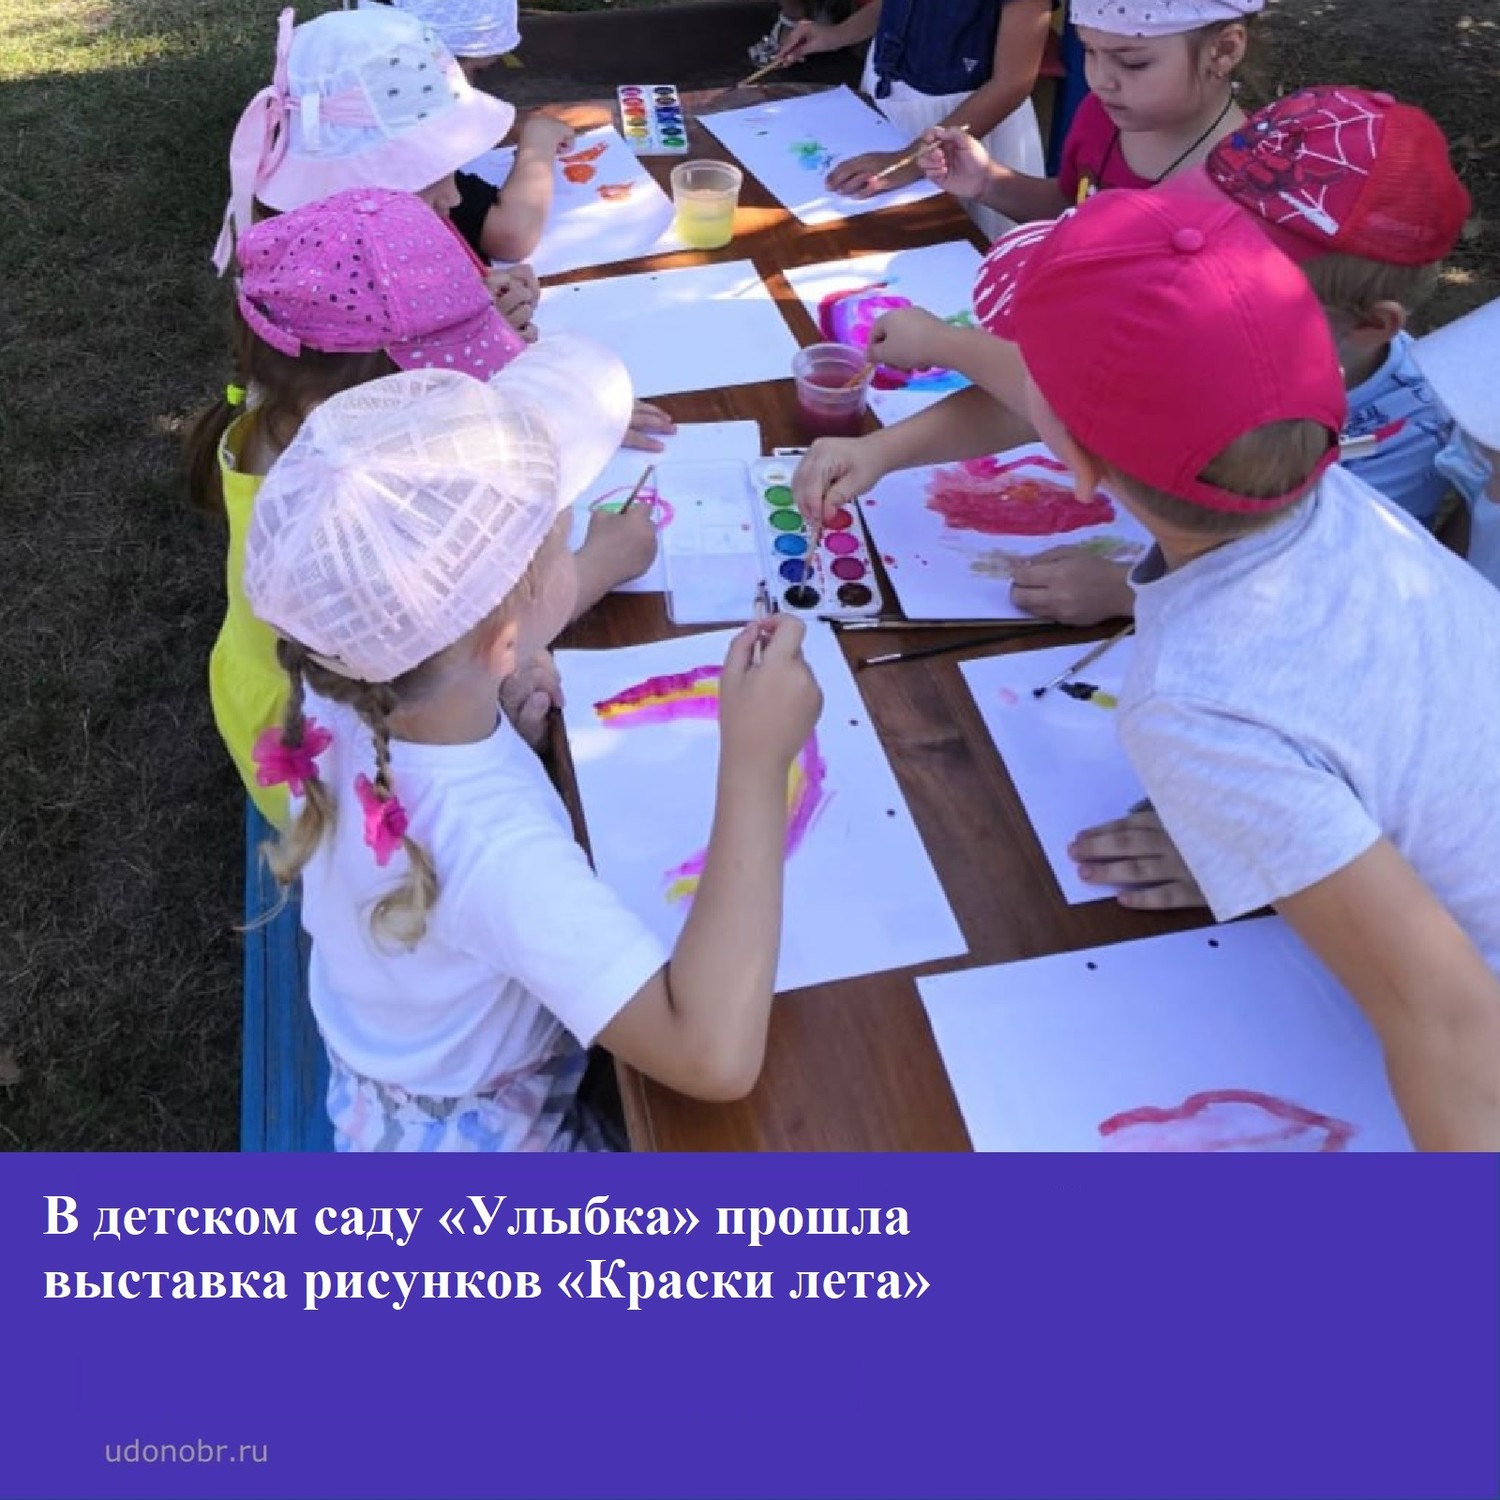 В детском саду «Улыбка» прошла выставка рисунков «Краски лета».